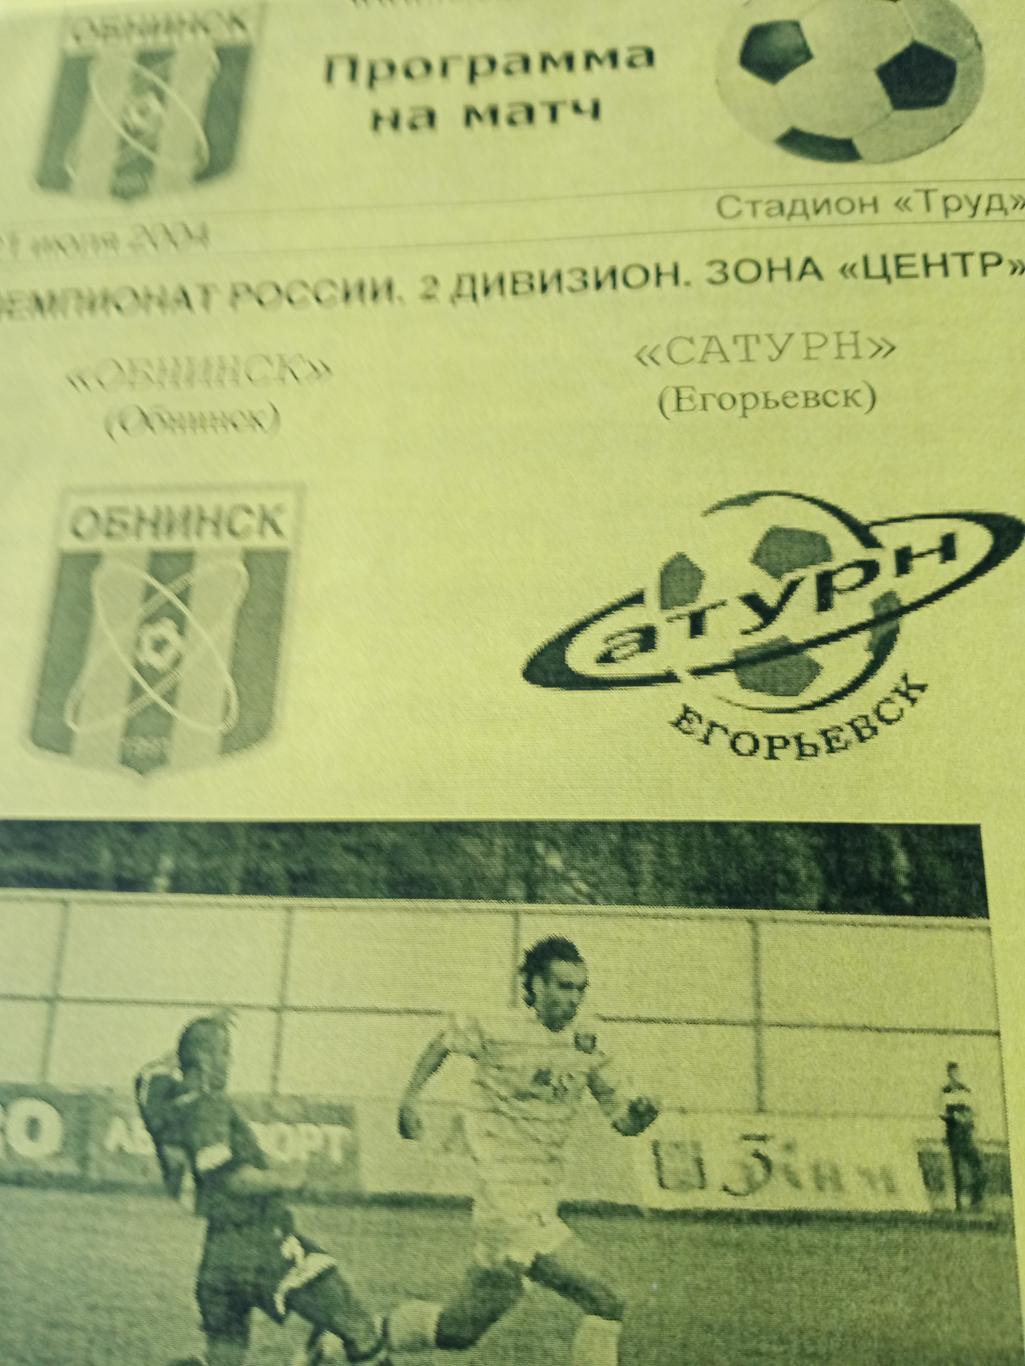 ФК Обнинск - Сатурн Егорьевск. 21 июля 2004 год